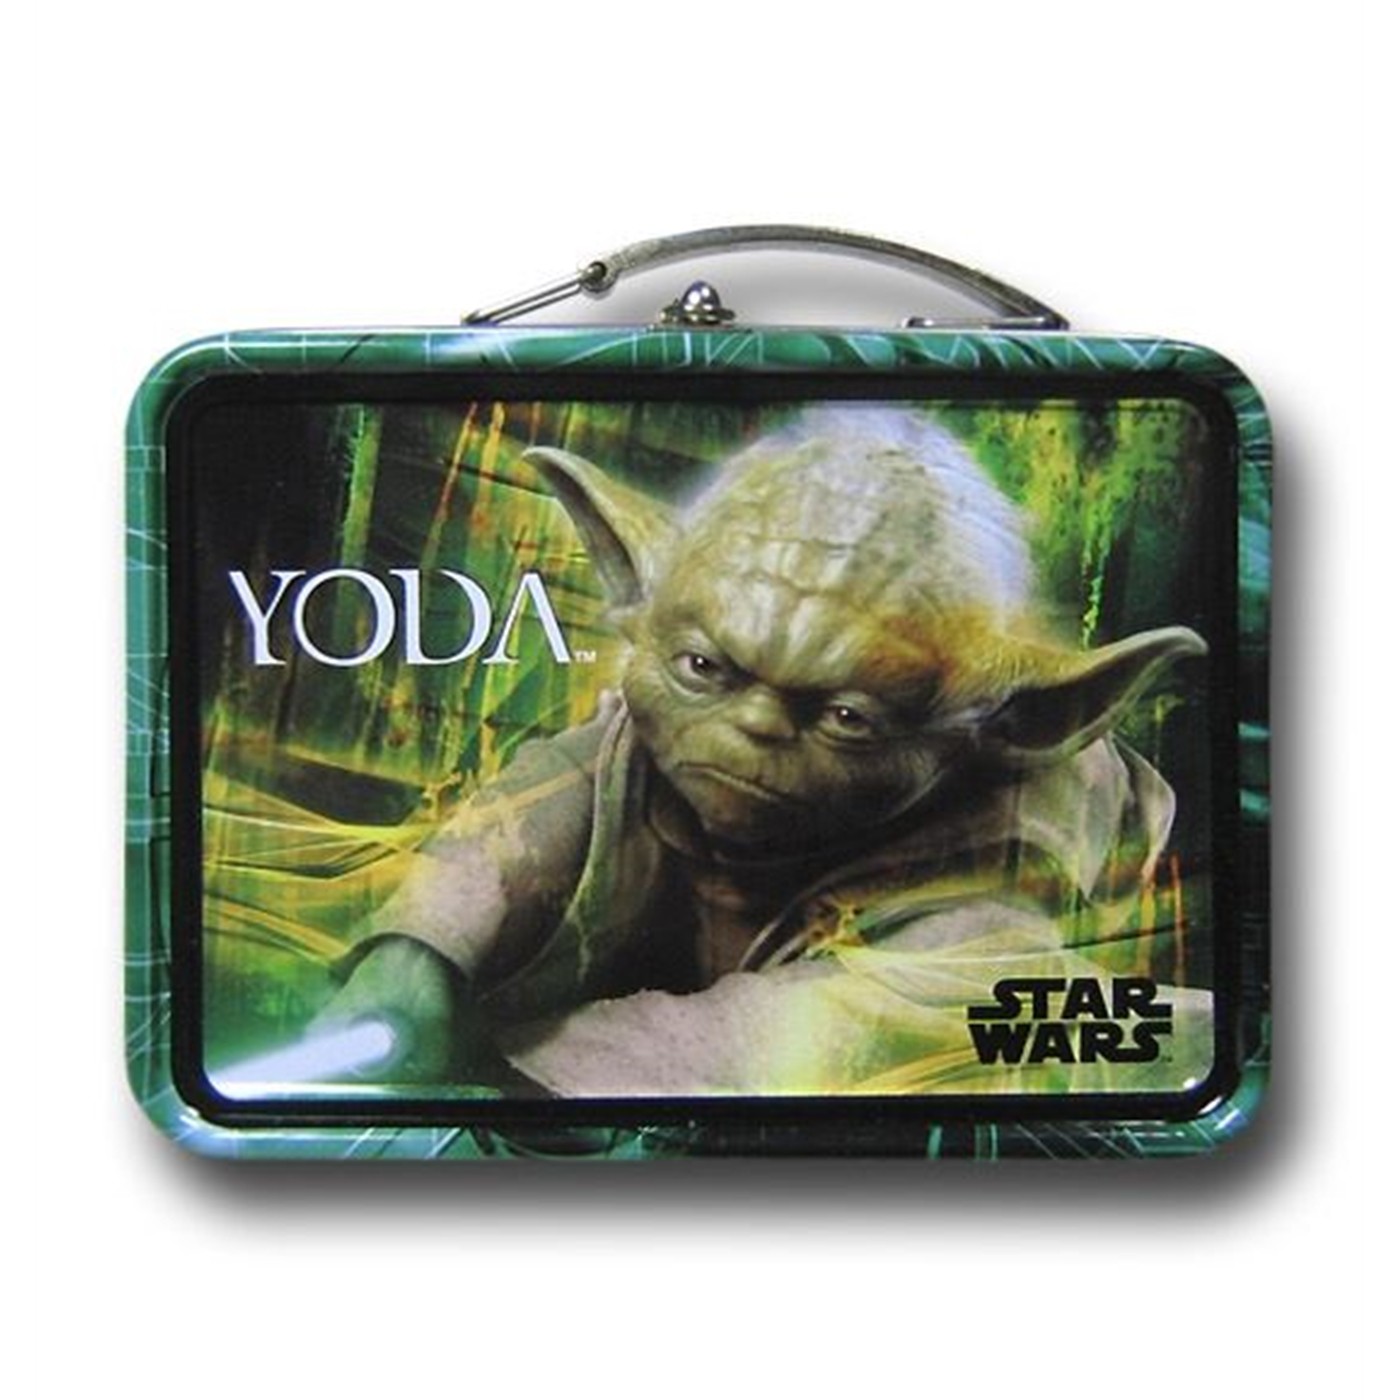 Star Wars Yoda Mini Lunchbox